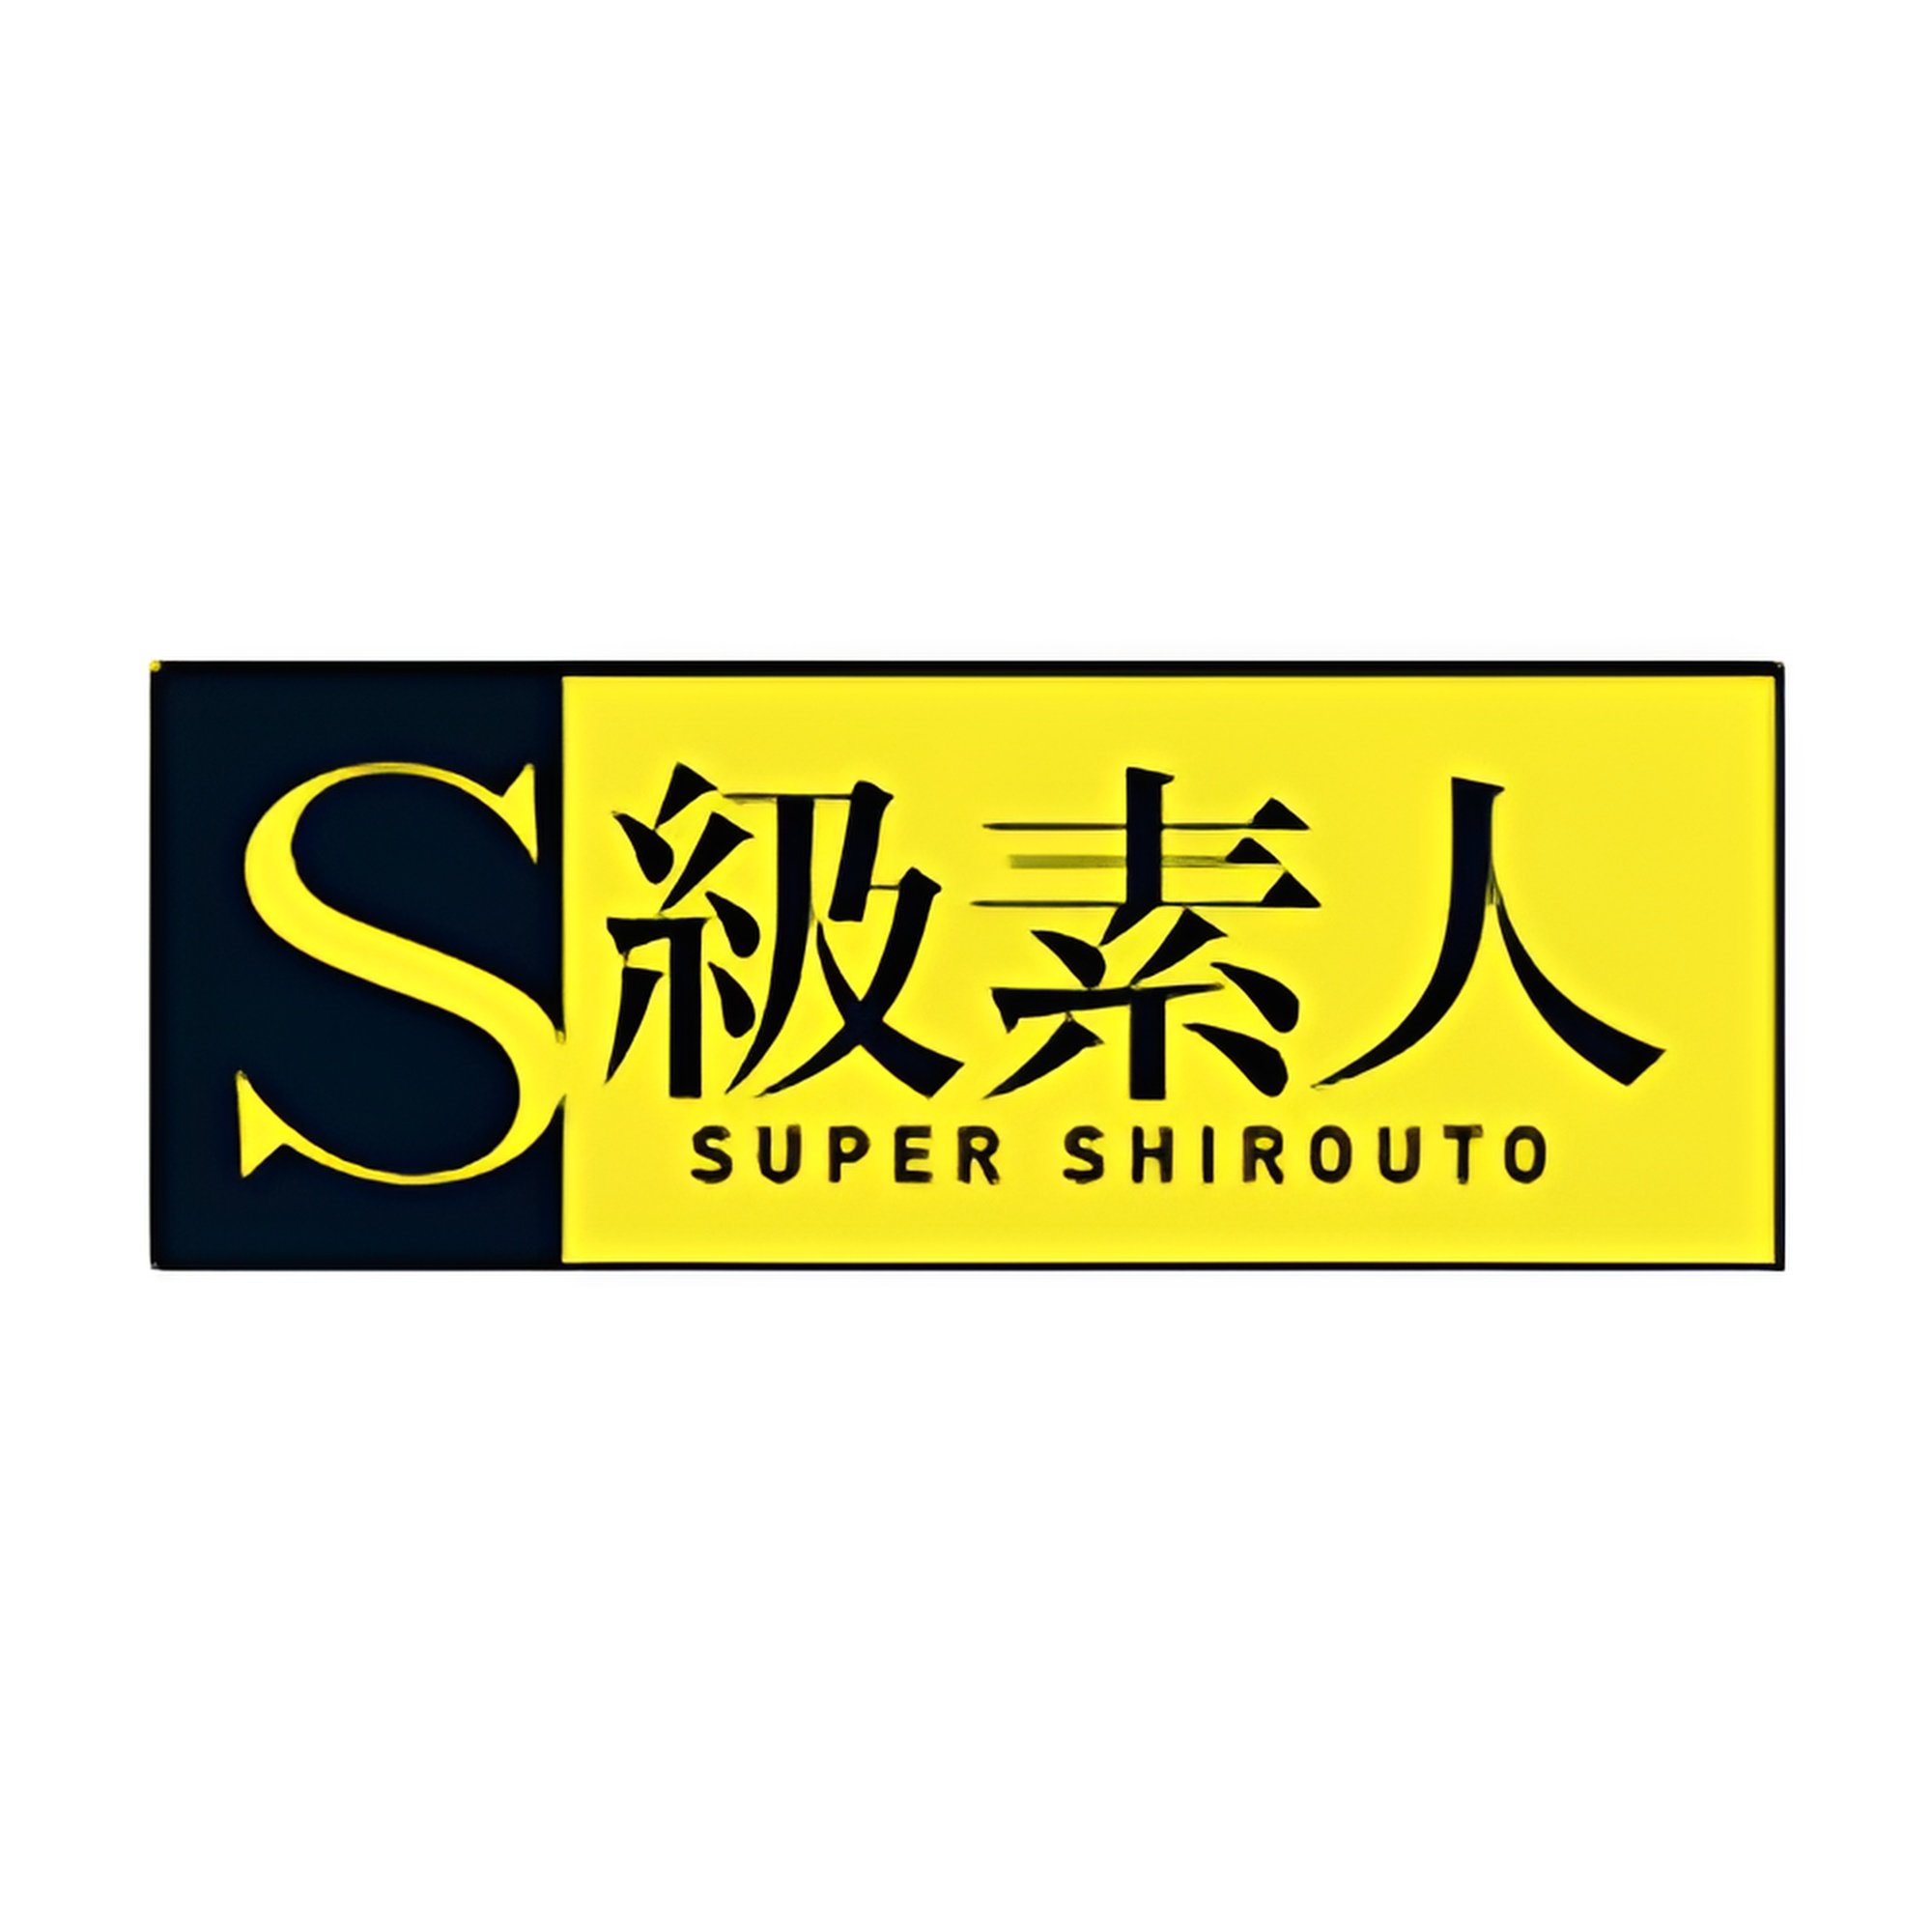 Skyu Shiroto